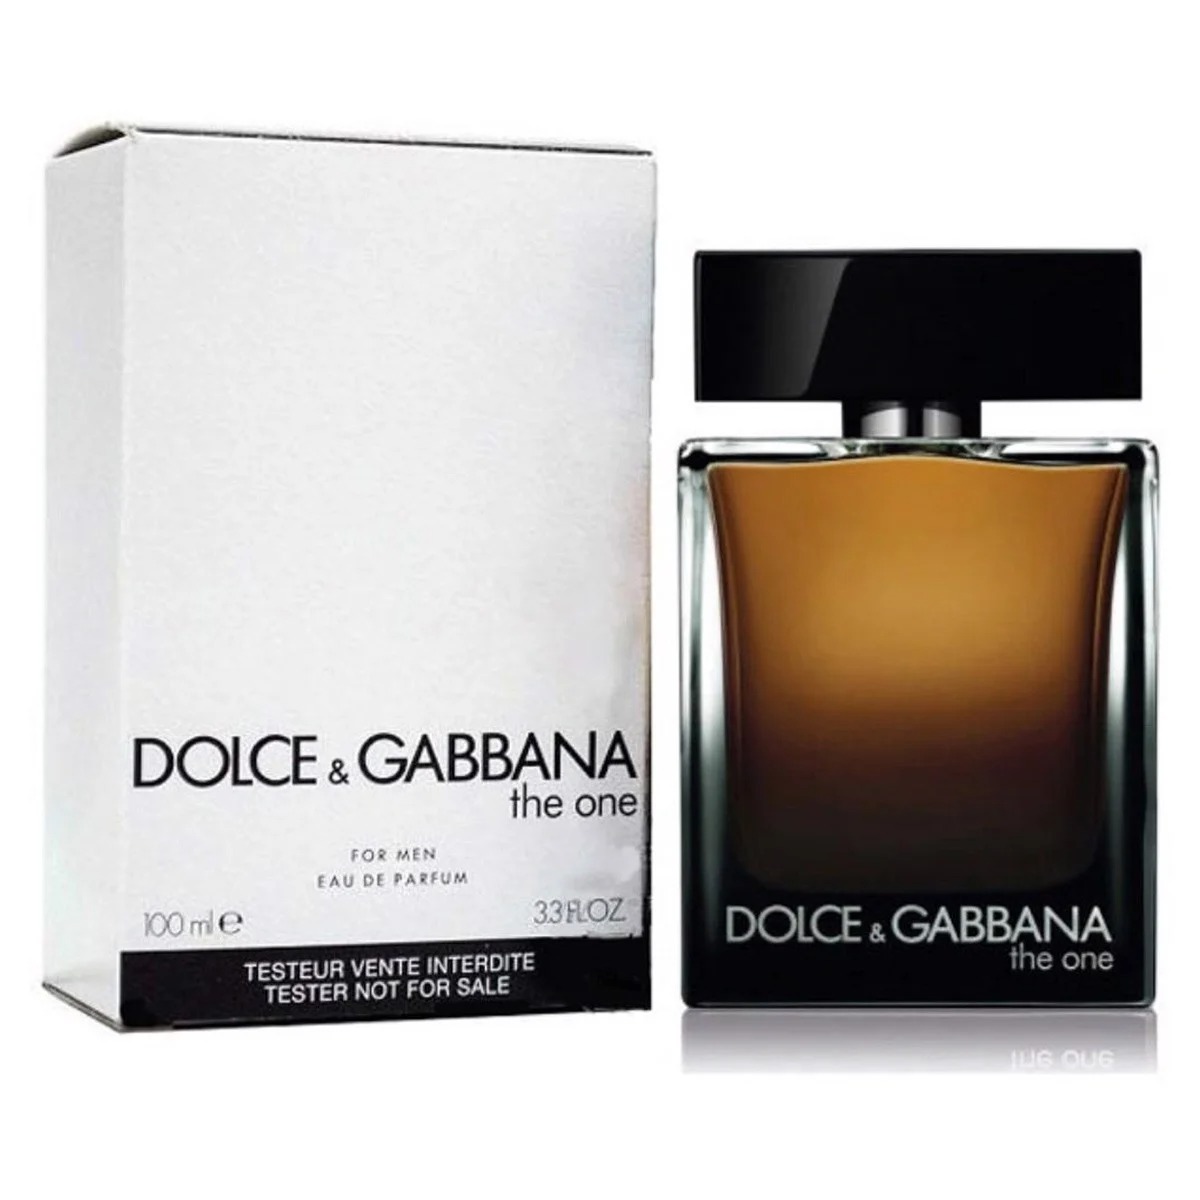 Dolce & Gabbana The One for Men Eau de Parfum 3